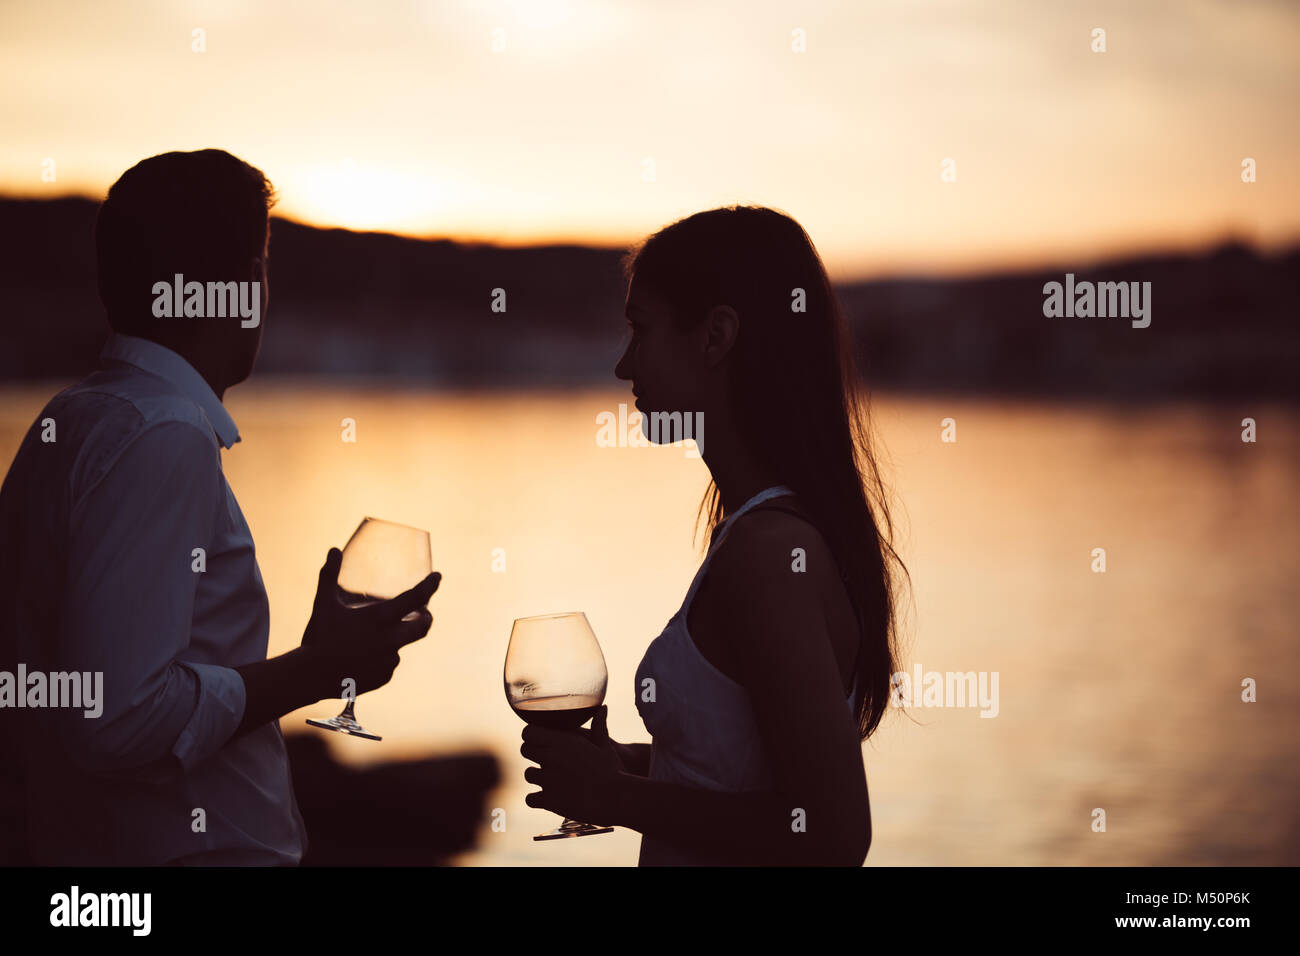 Deux jeunes gens buvant un verre de vin rouge dans le coucher du soleil sur la mer.Une Santé de verre de vin rouge fait maison,la culture méditerranéenne.les climats chauds,mer Banque D'Images